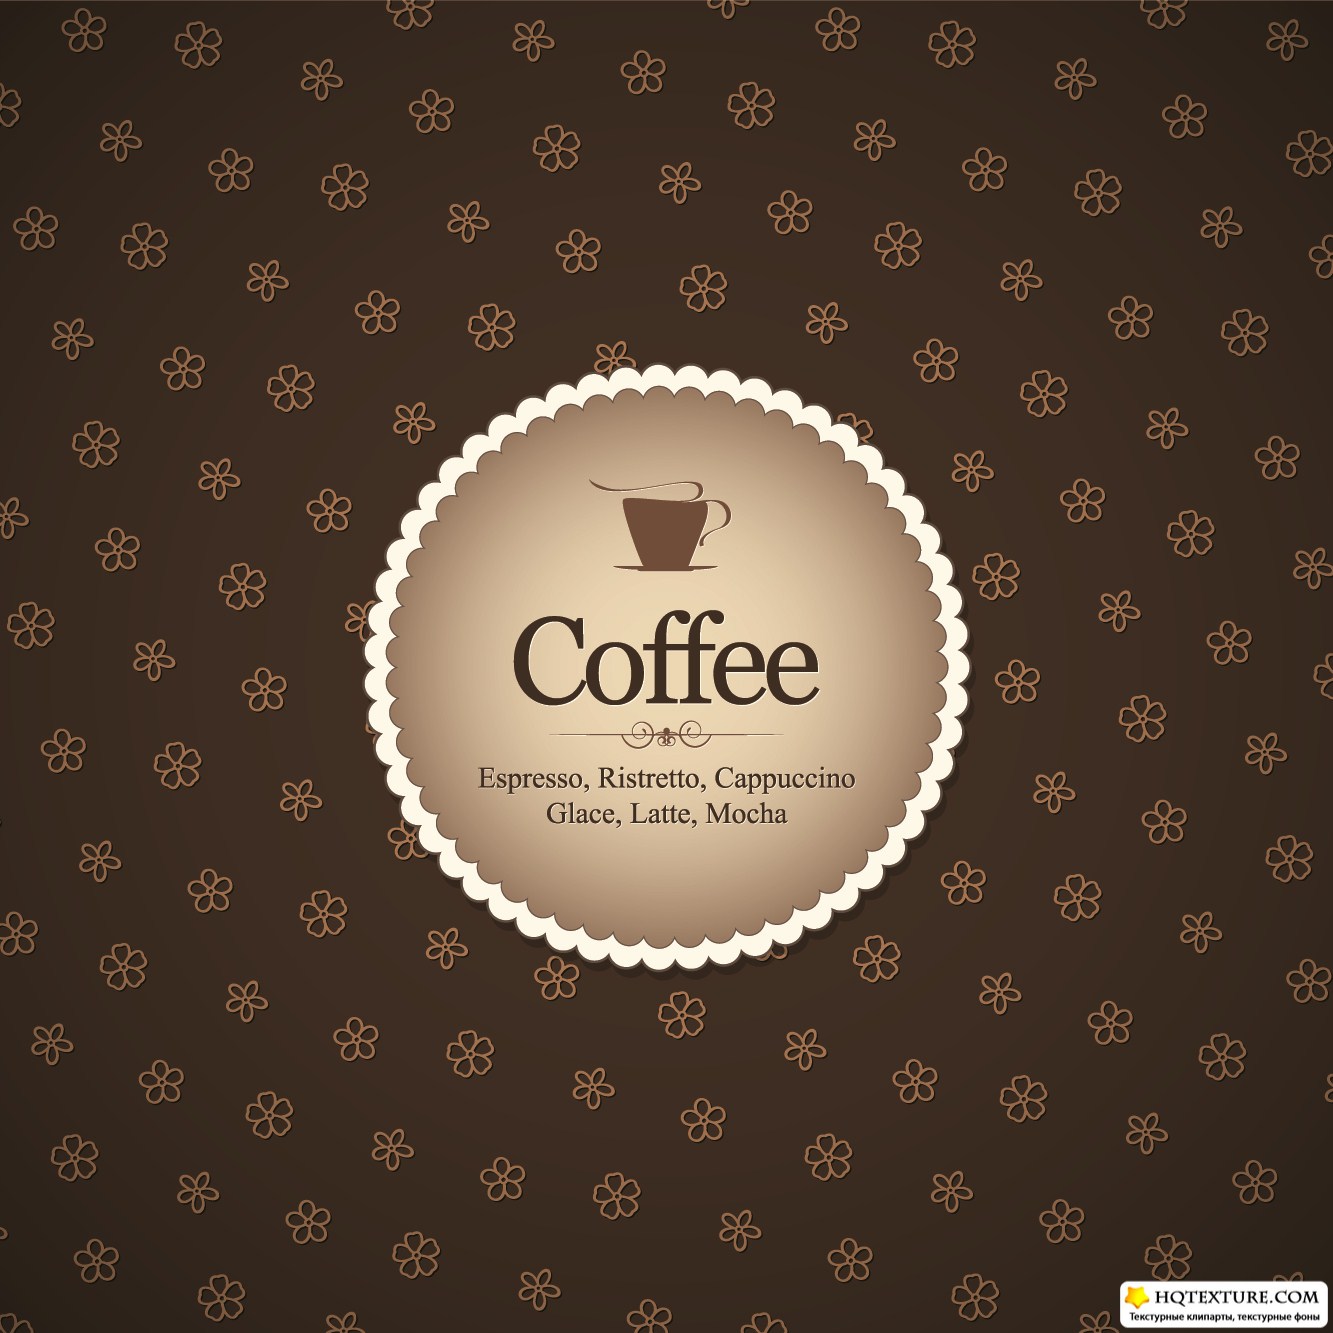 Download Coffee menu » Векторные клипарты, текстурные фоны ...